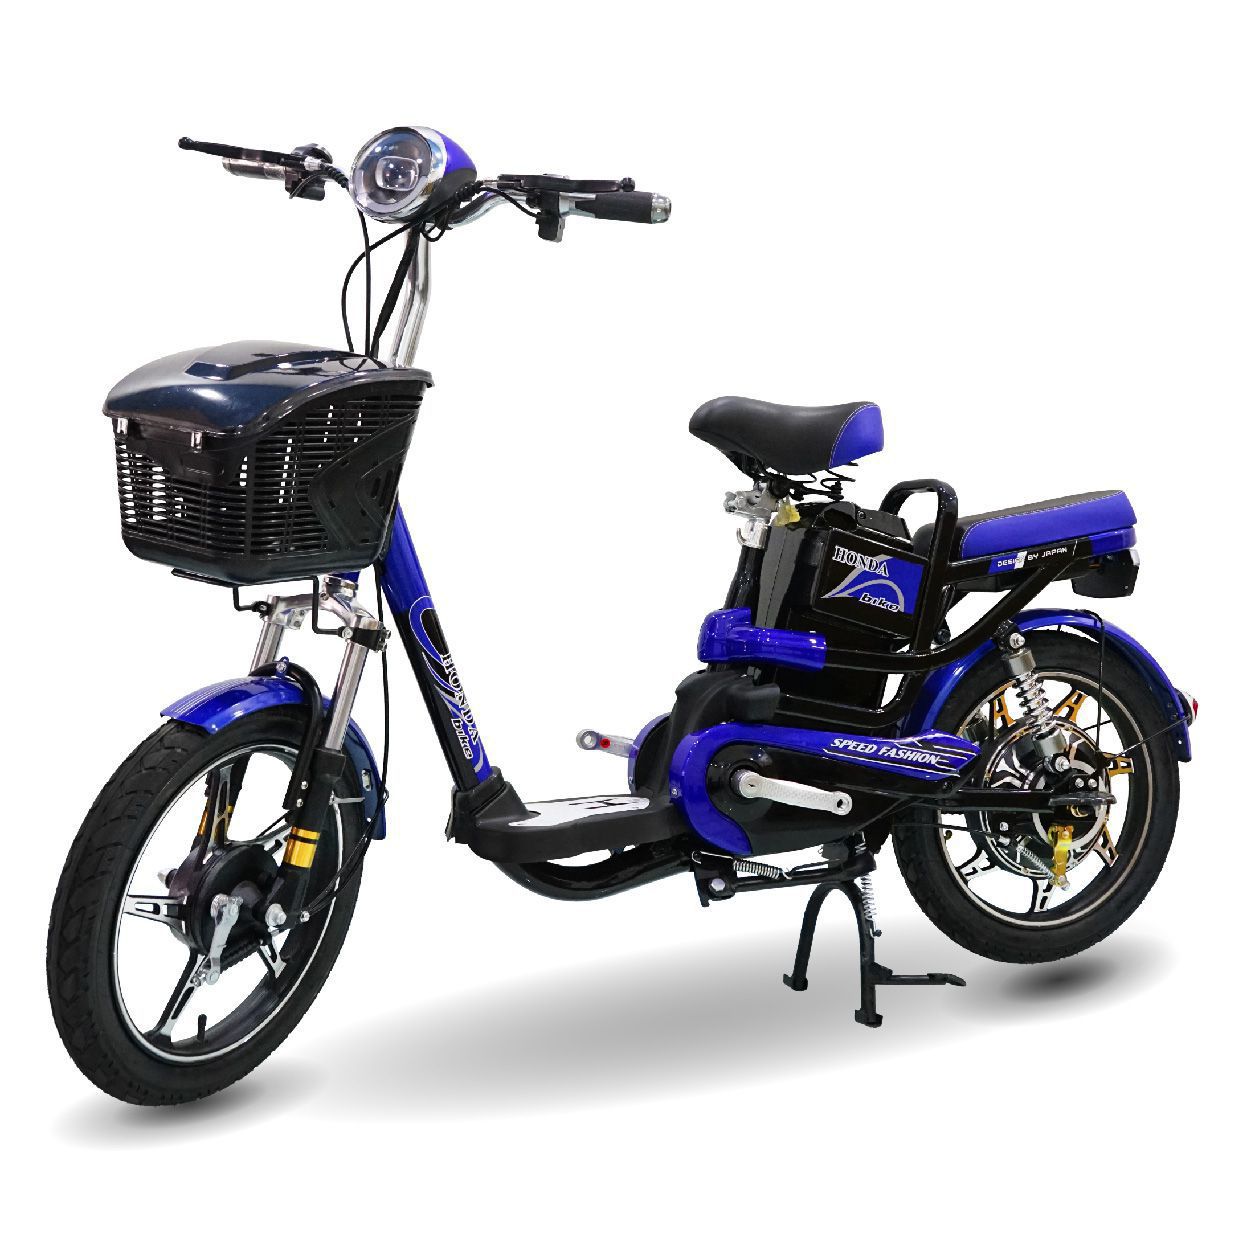 Xe đạp điện Honda bike 2019